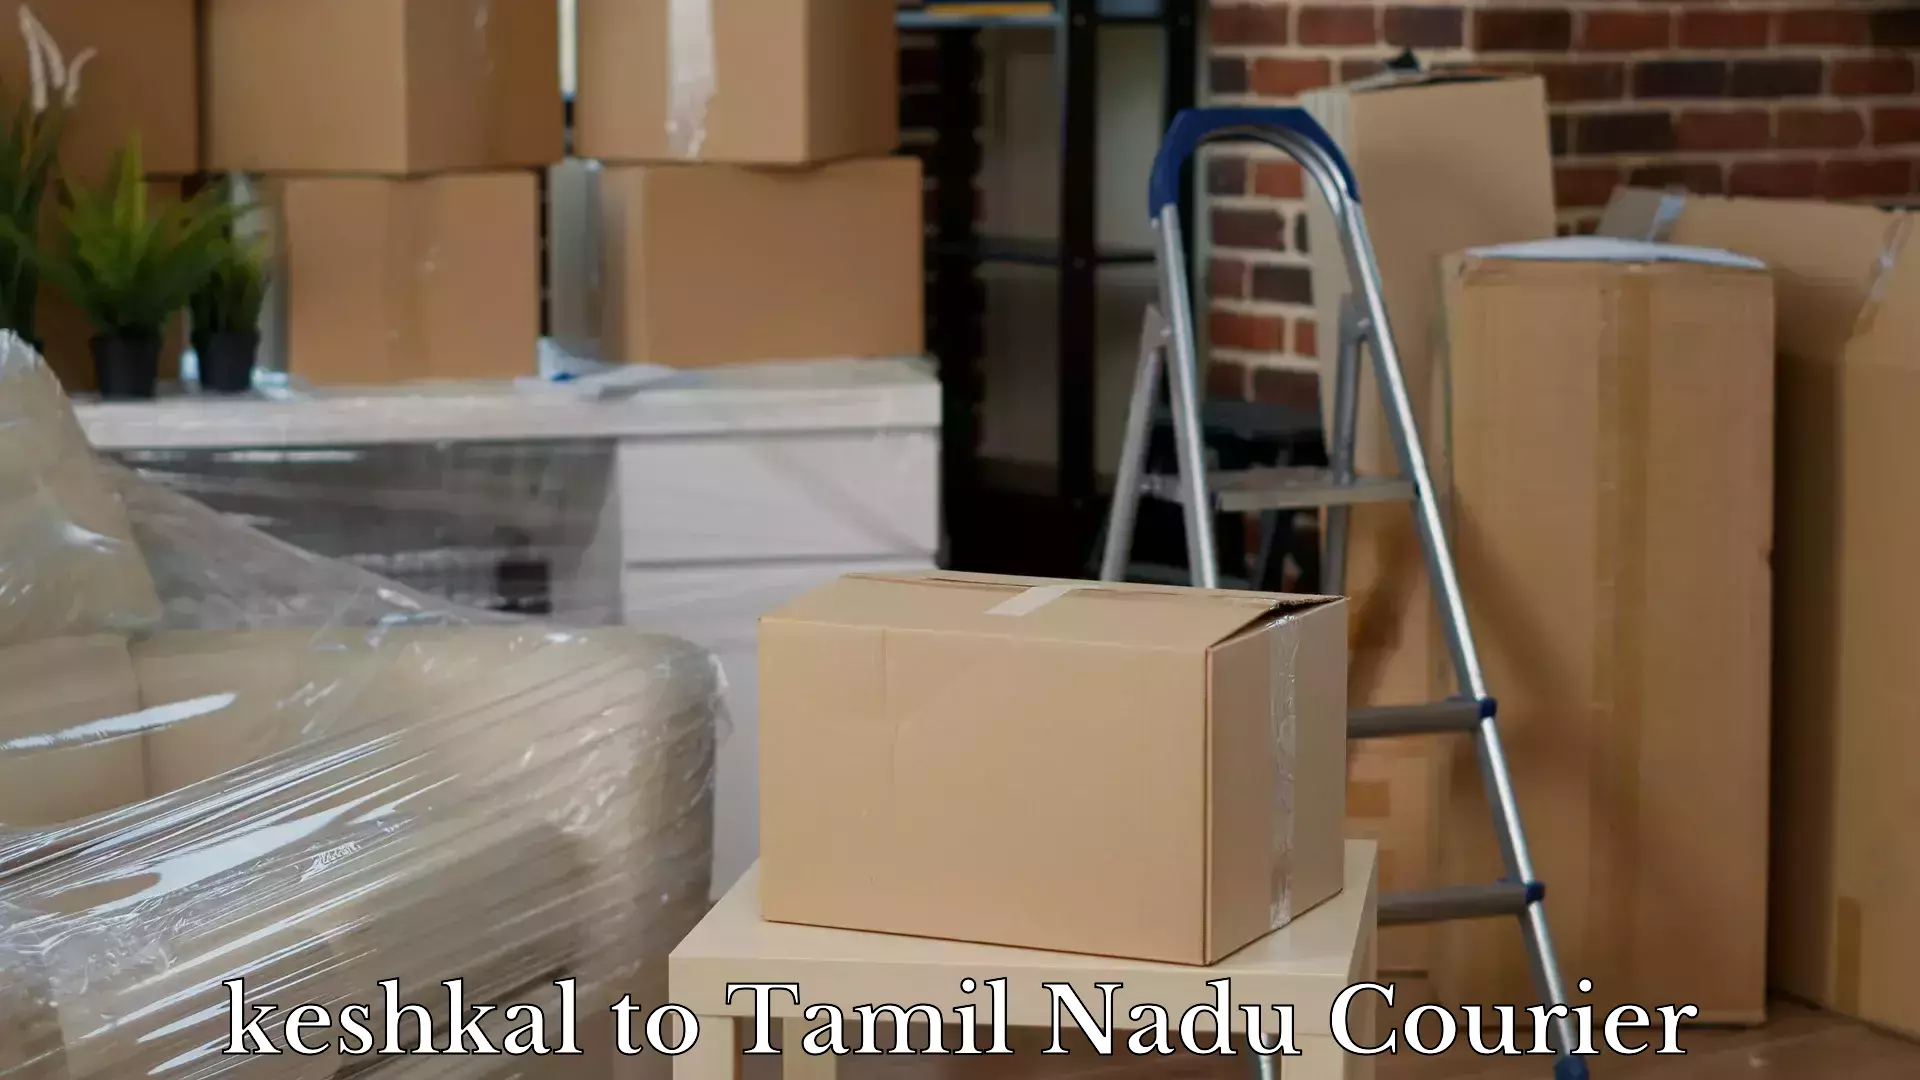 Baggage delivery management keshkal to Orathanadu